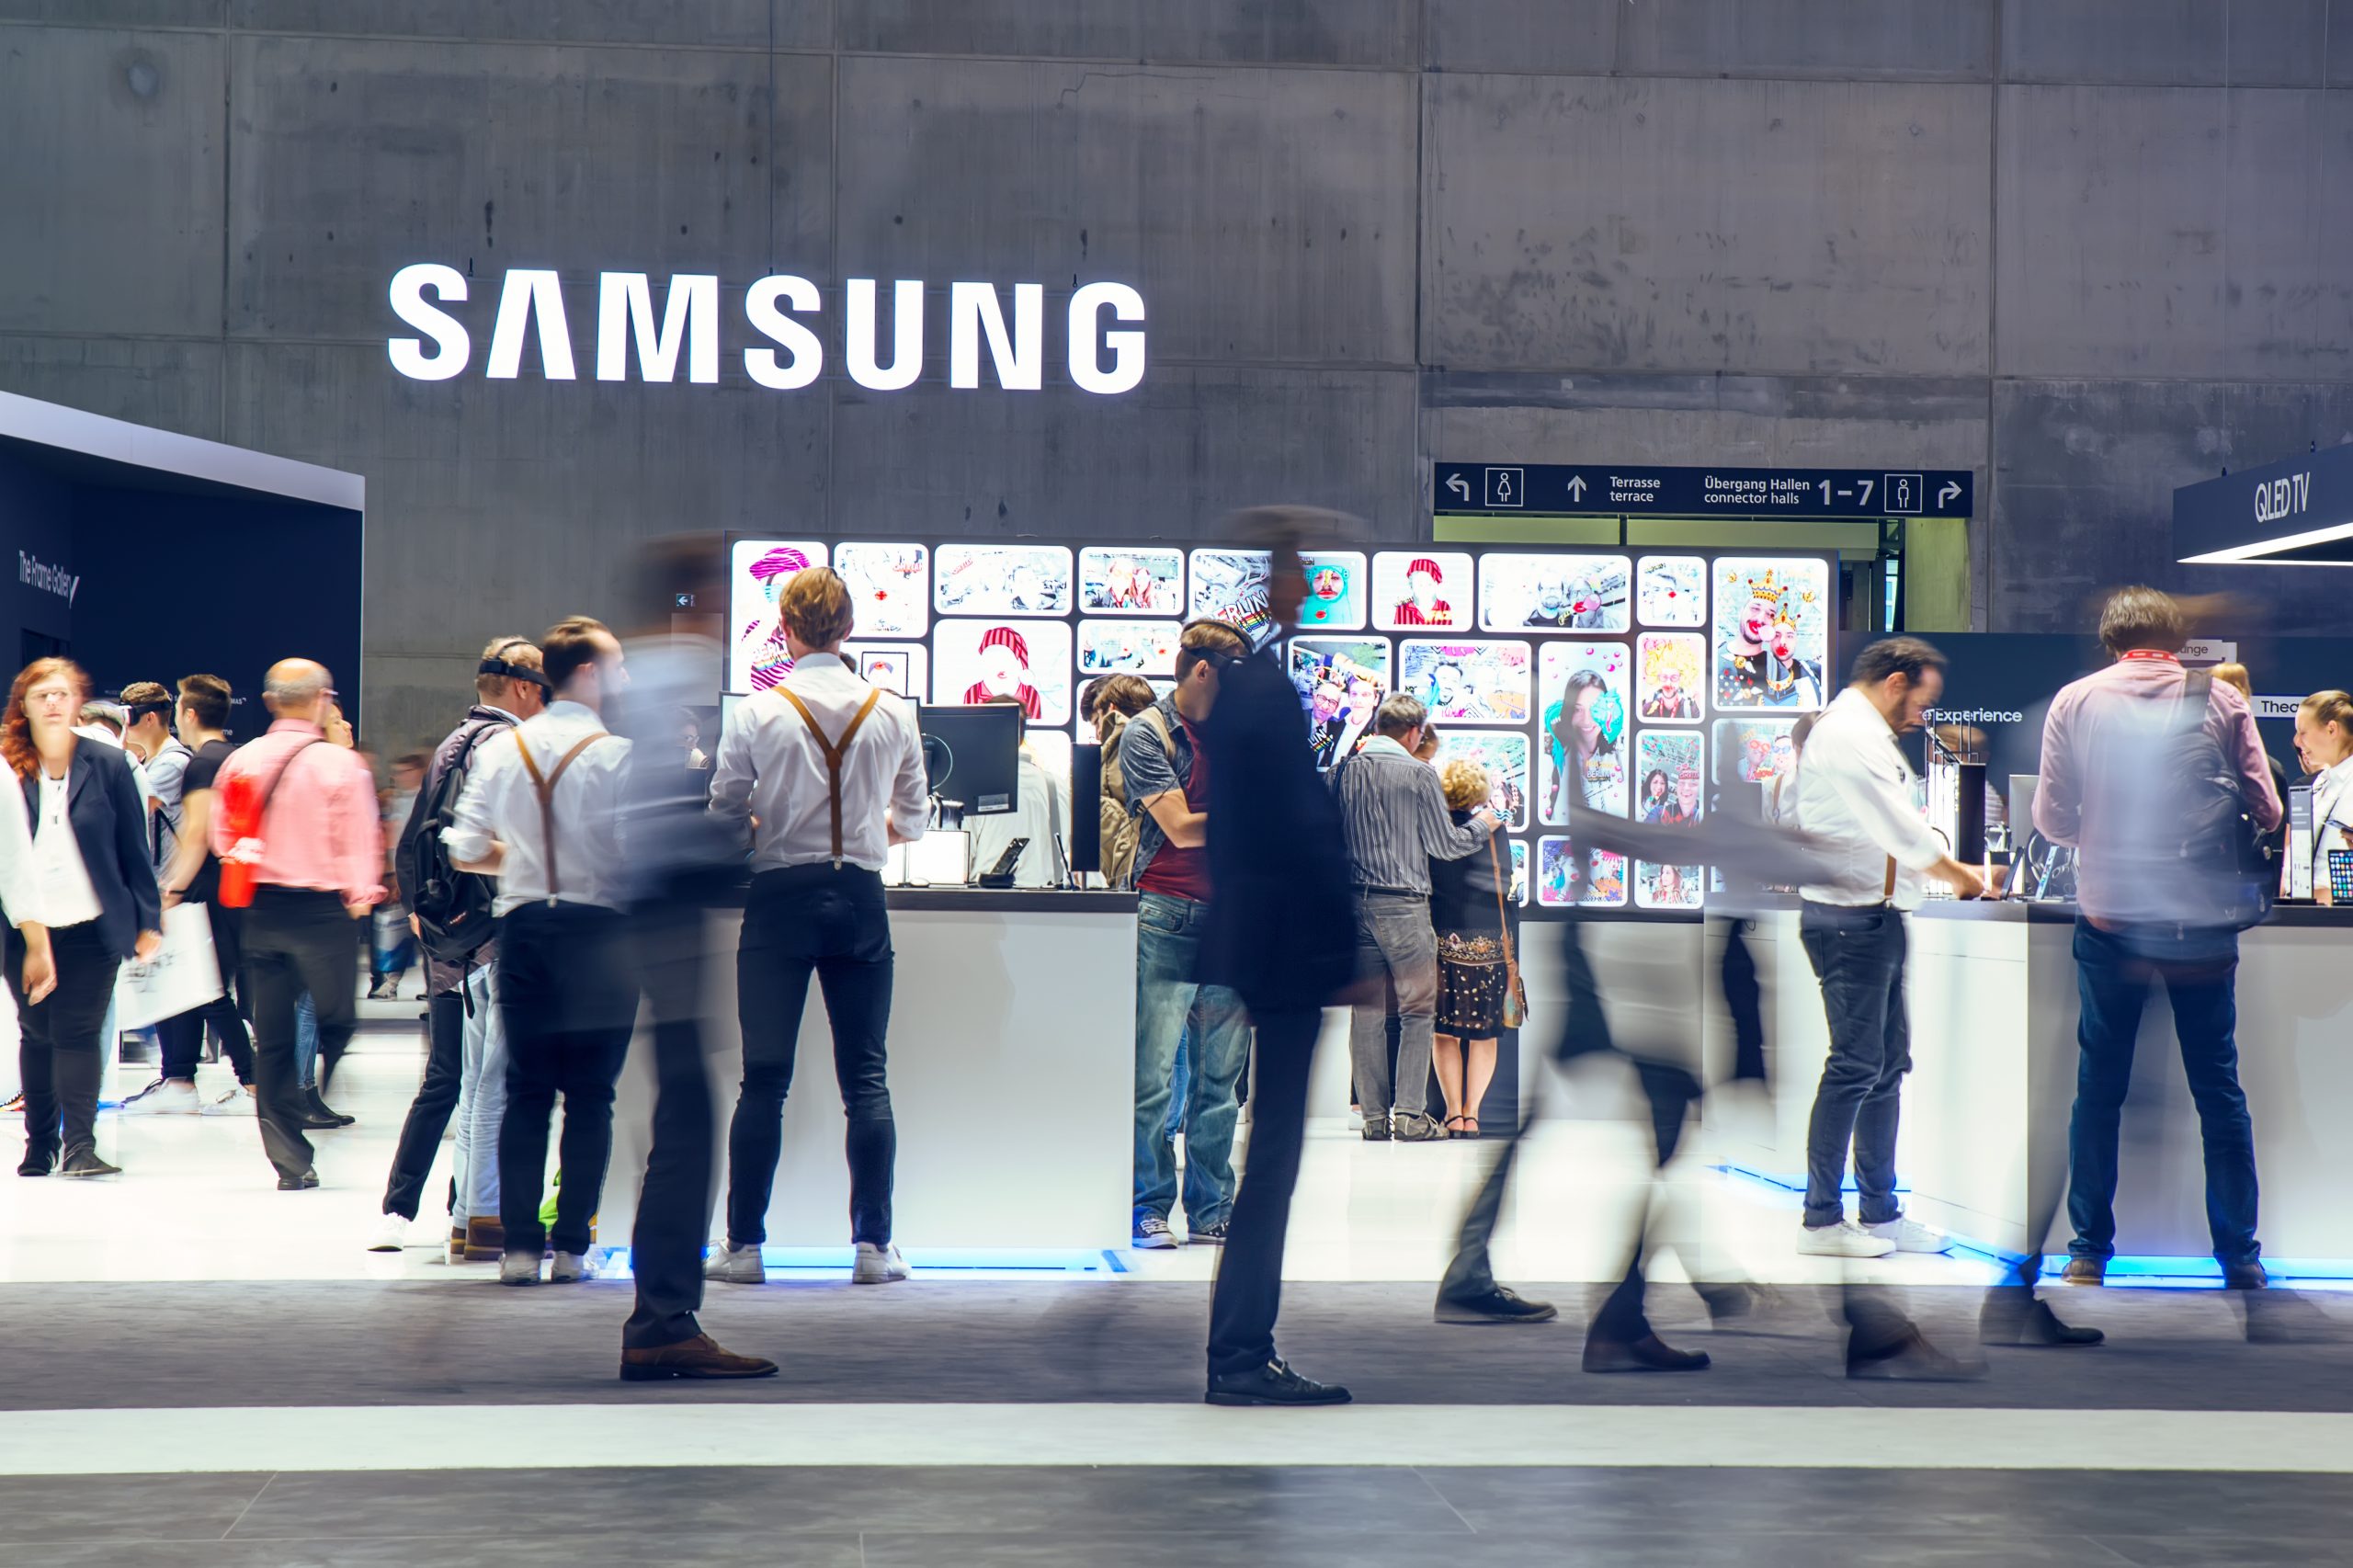 Samsung lance un niveau supérieur de personnalisation et de connectivité des produits avec la campagne #YouMake